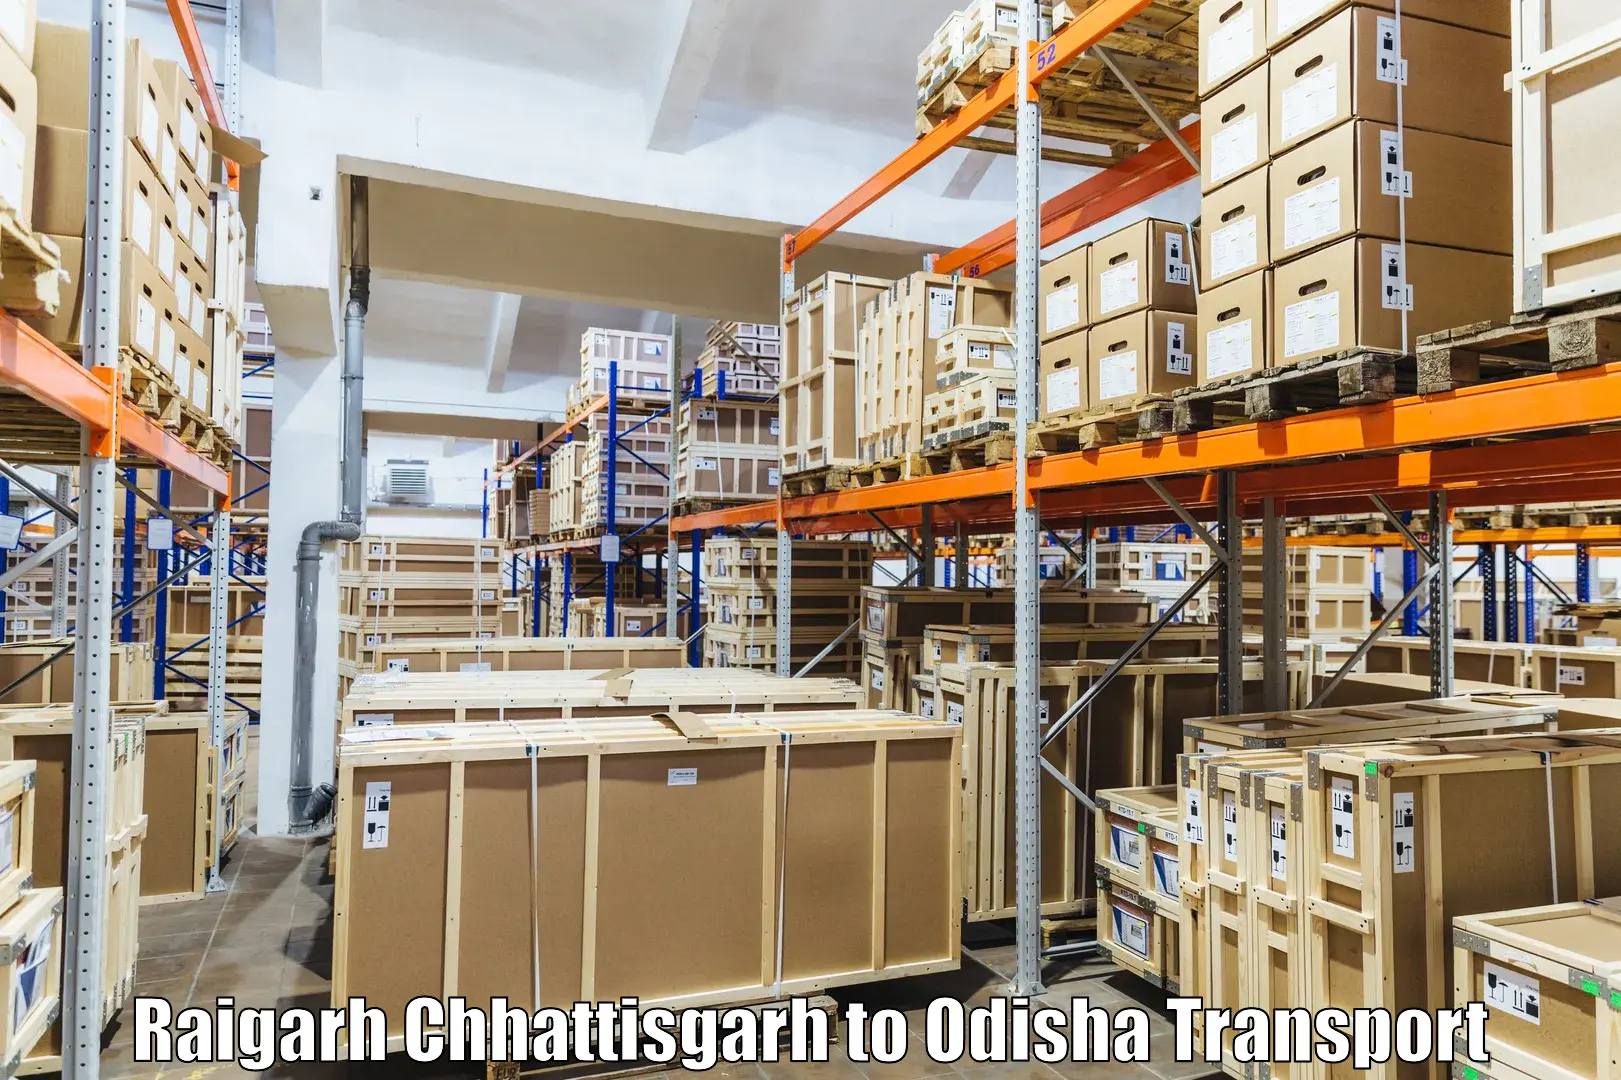 India truck logistics services in Raigarh Chhattisgarh to Odisha